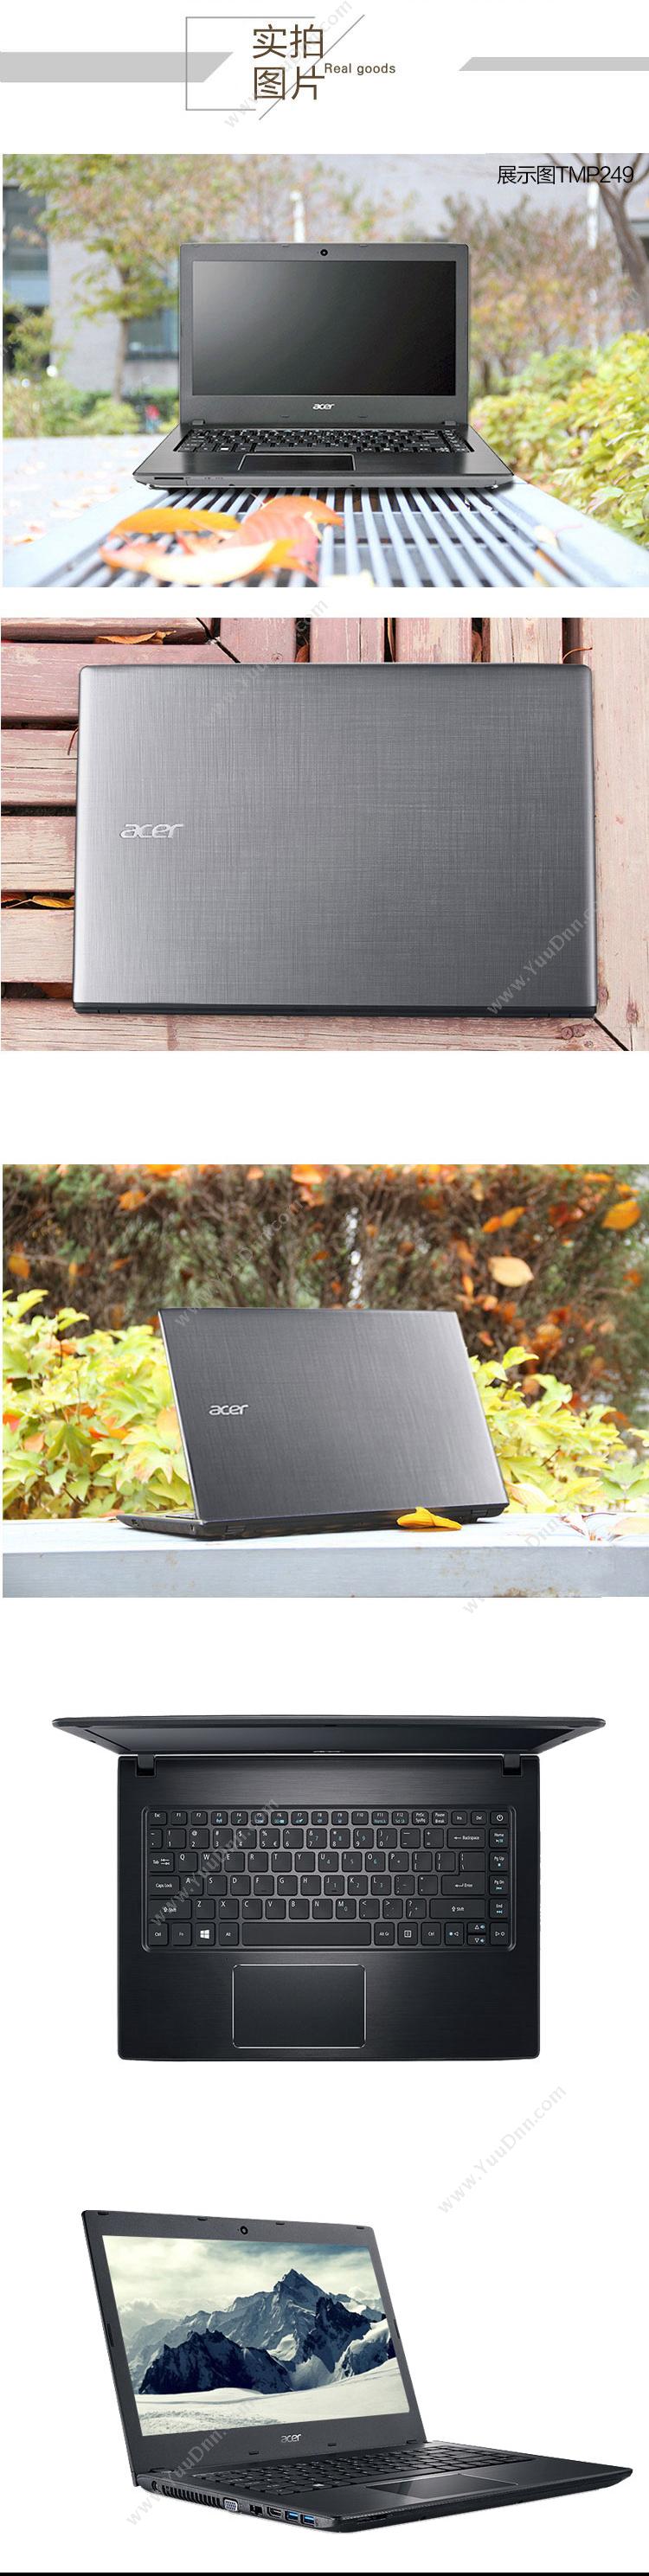 宏碁 Acer TravelMate P249-5042 便携式计算机 I3-6100U   /集成/4G/1T/2G独显/无光驱/LED/14英寸/一年保修 平板电脑